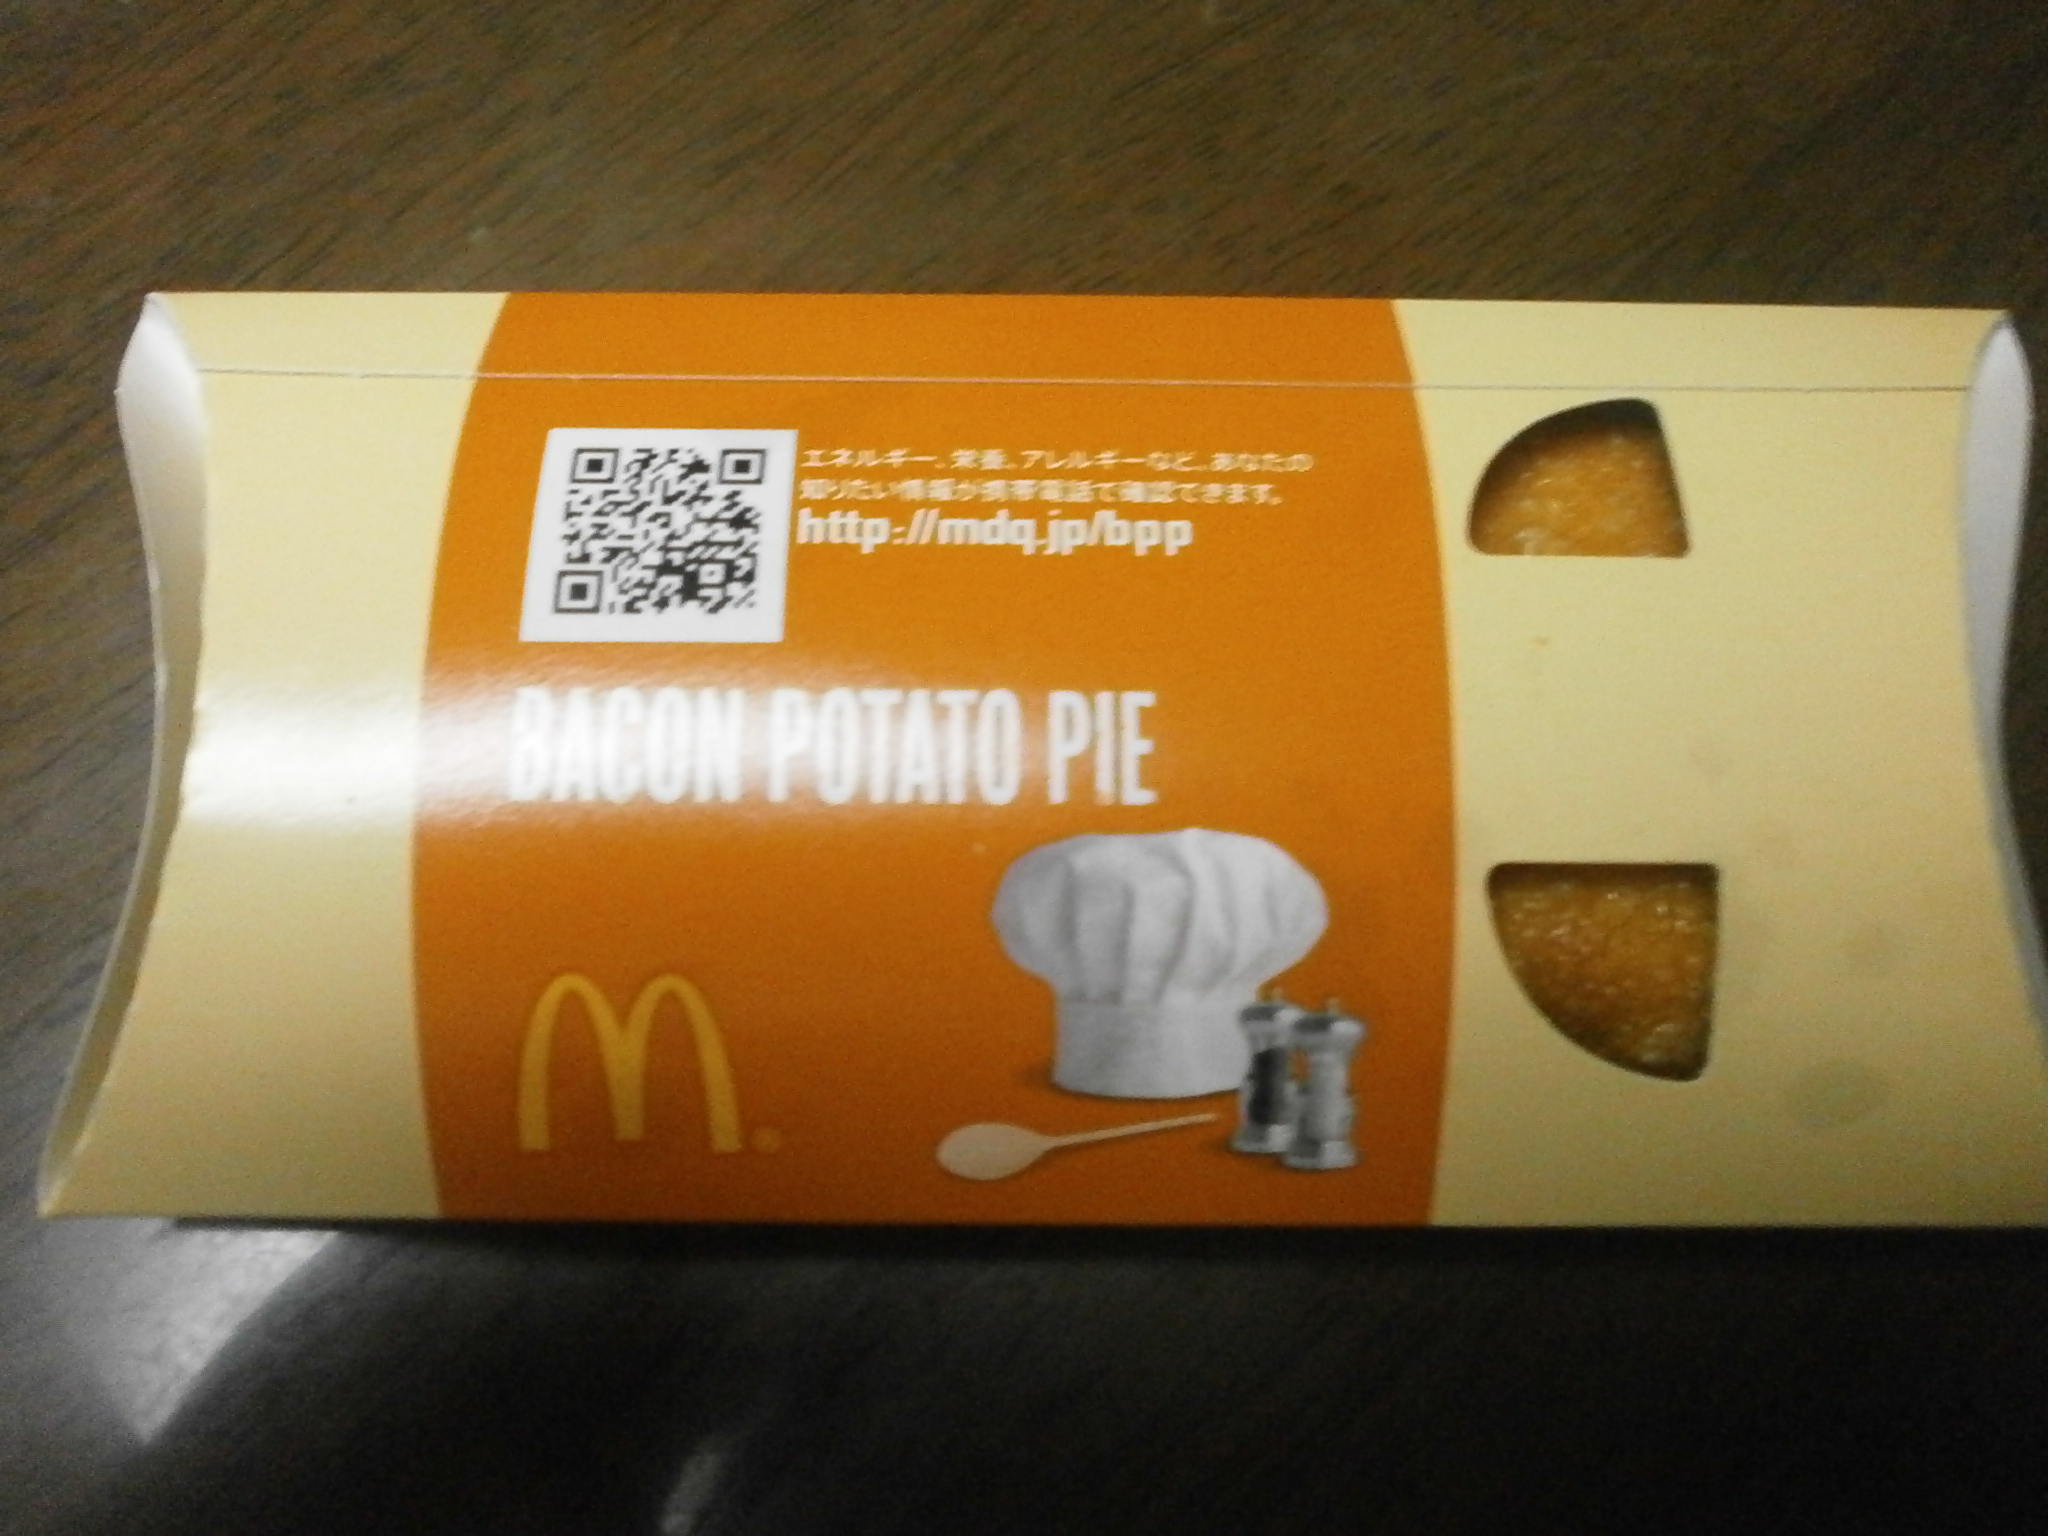 Tocino Papa Pie (McDonald)